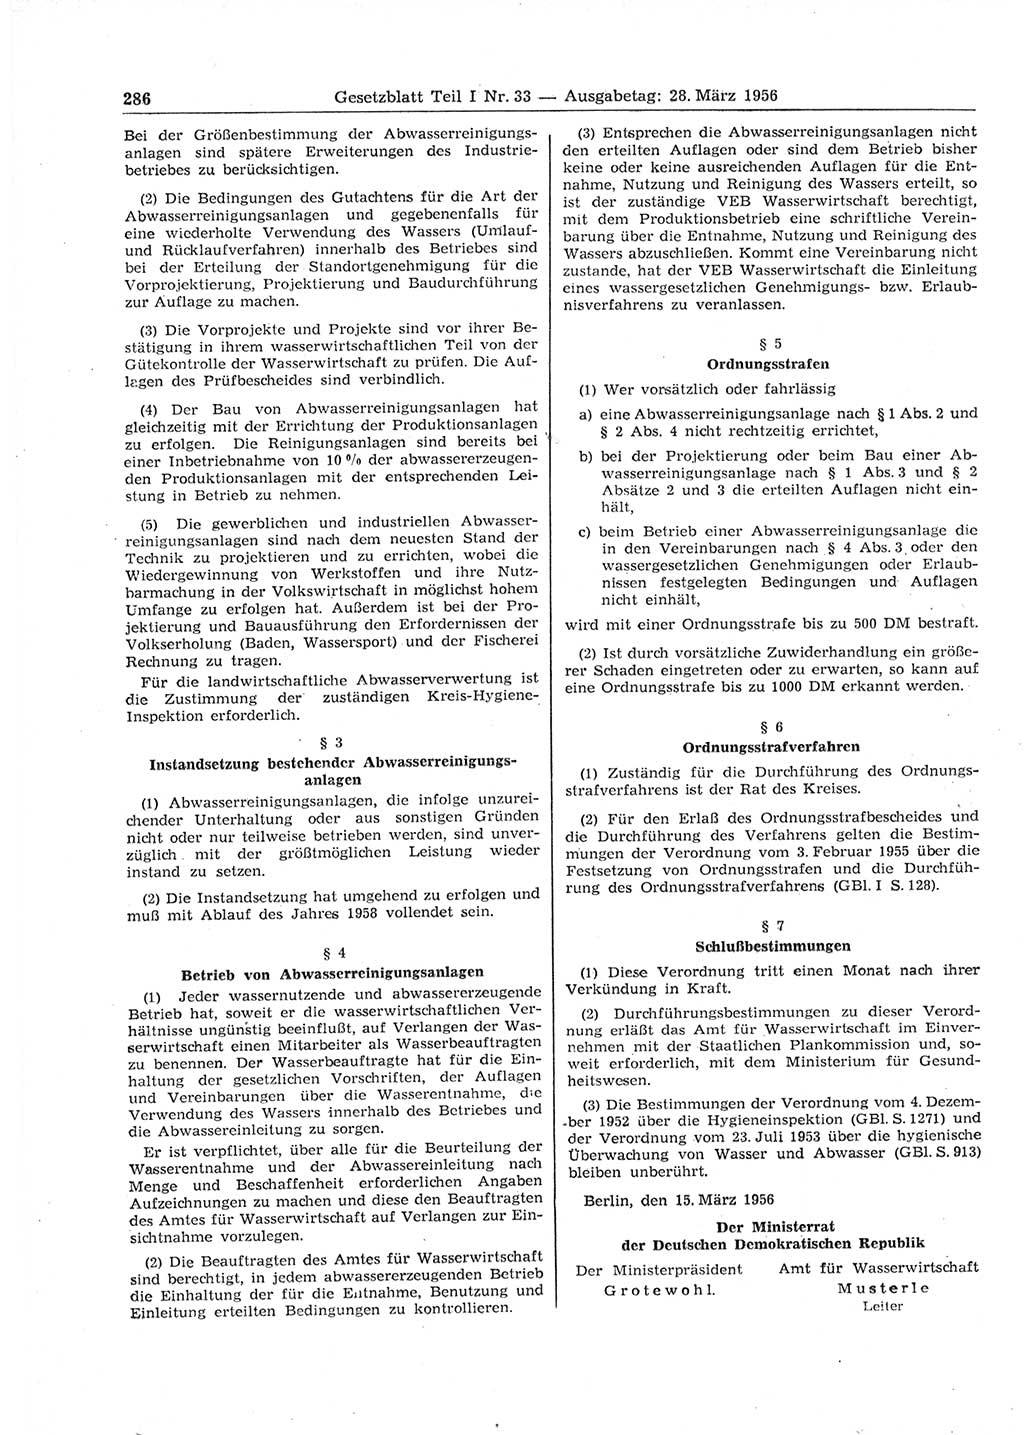 Gesetzblatt (GBl.) der Deutschen Demokratischen Republik (DDR) Teil Ⅰ 1956, Seite 286 (GBl. DDR Ⅰ 1956, S. 286)